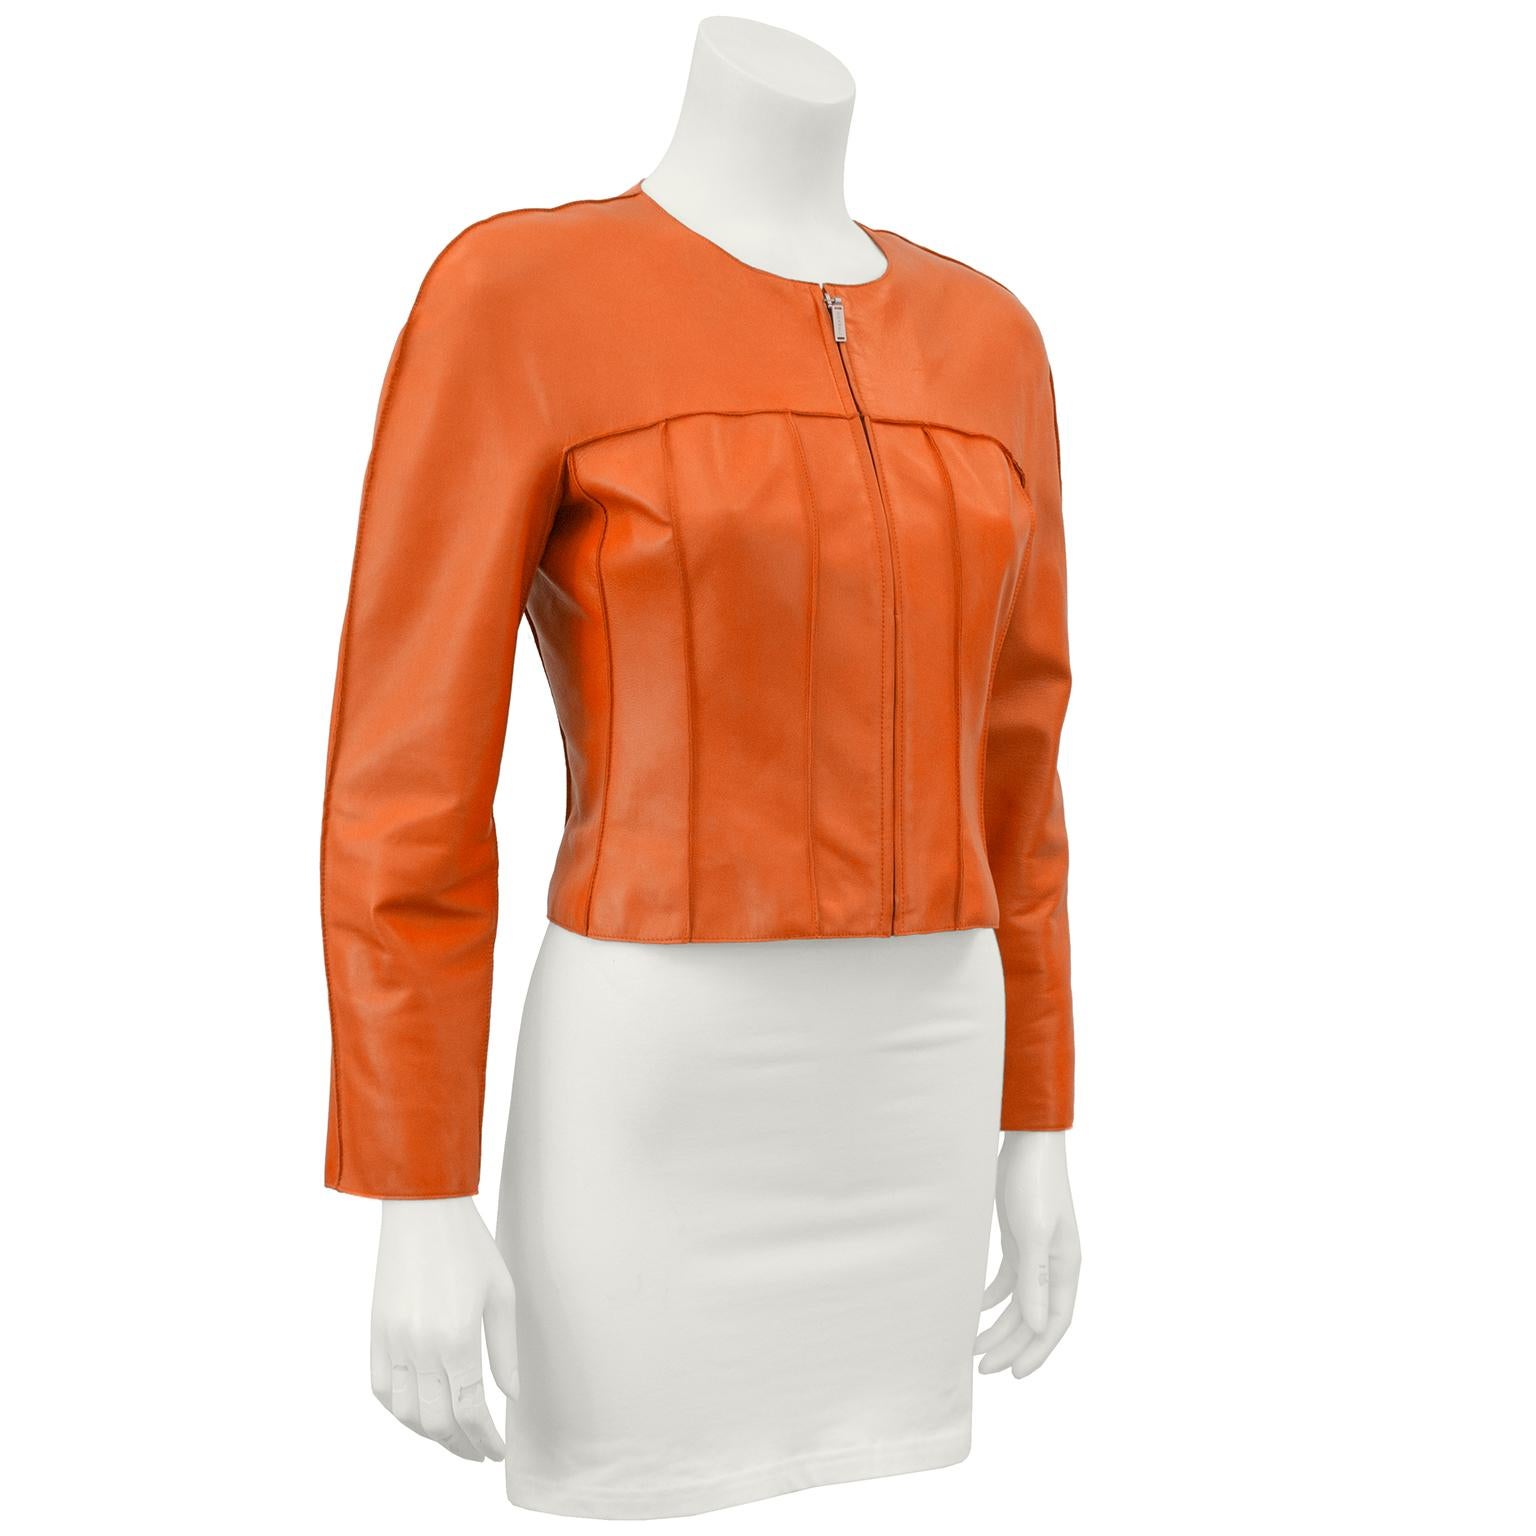 Veste courte en cuir d'agneau orange de la collection Chanel printemps 1999. La veste a une épaule légèrement structurée, une fermeture éclair sur le devant, une encolure arrondie et des coutures verticales sur tout le corps. Entièrement doublé en